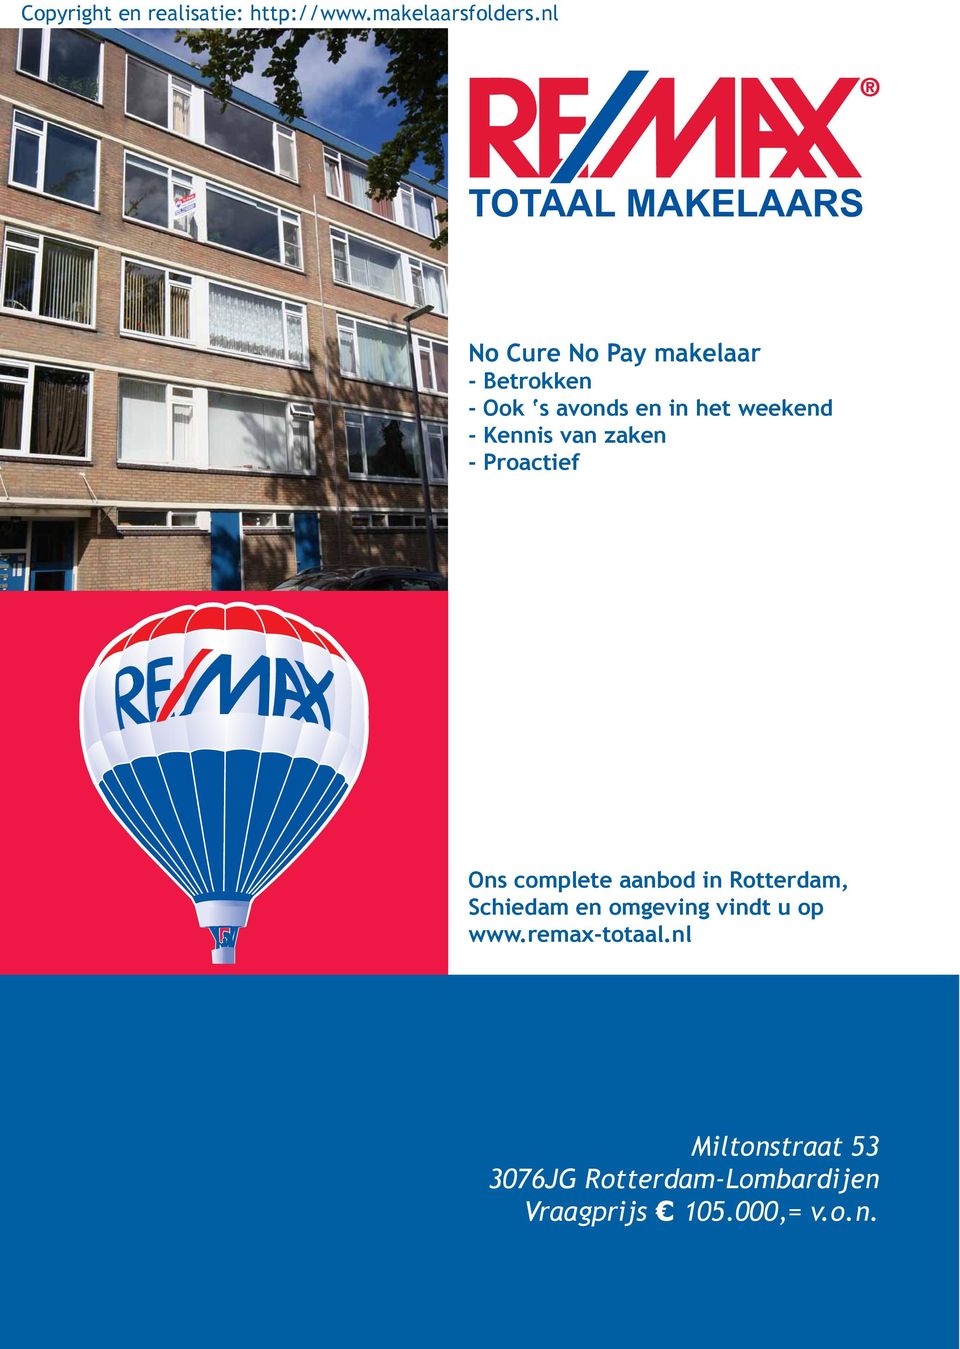 in Rotterdam, Schiedam en omgeving vindt u op www.remax-totaal.